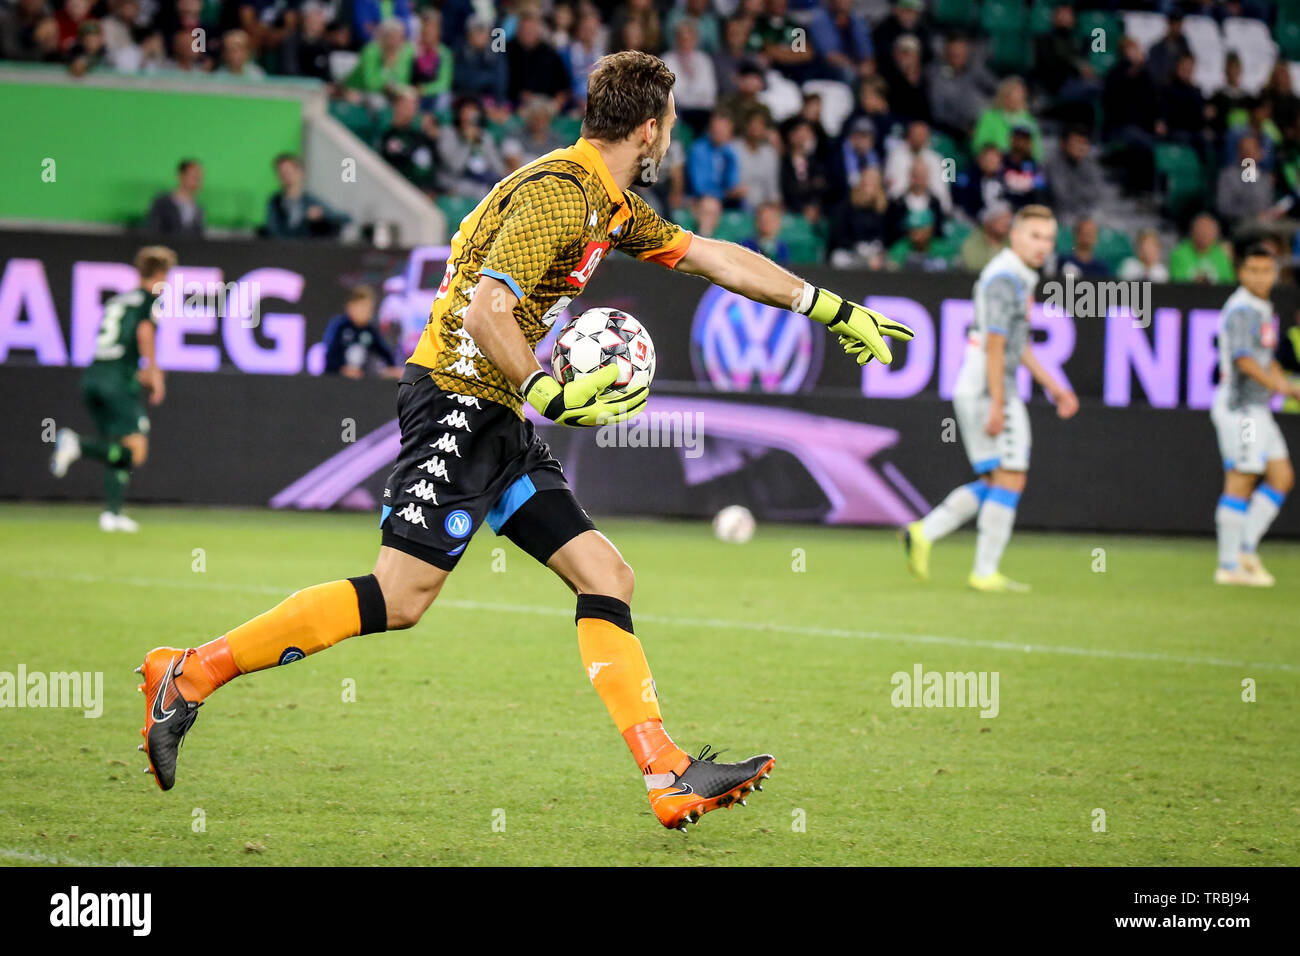 Wolfsburg, Germania, 11 agosto 2018: SSC Napoli portiere Orestis Karnezisin in azione durante la partita. Foto di Michele Morrone Foto Stock